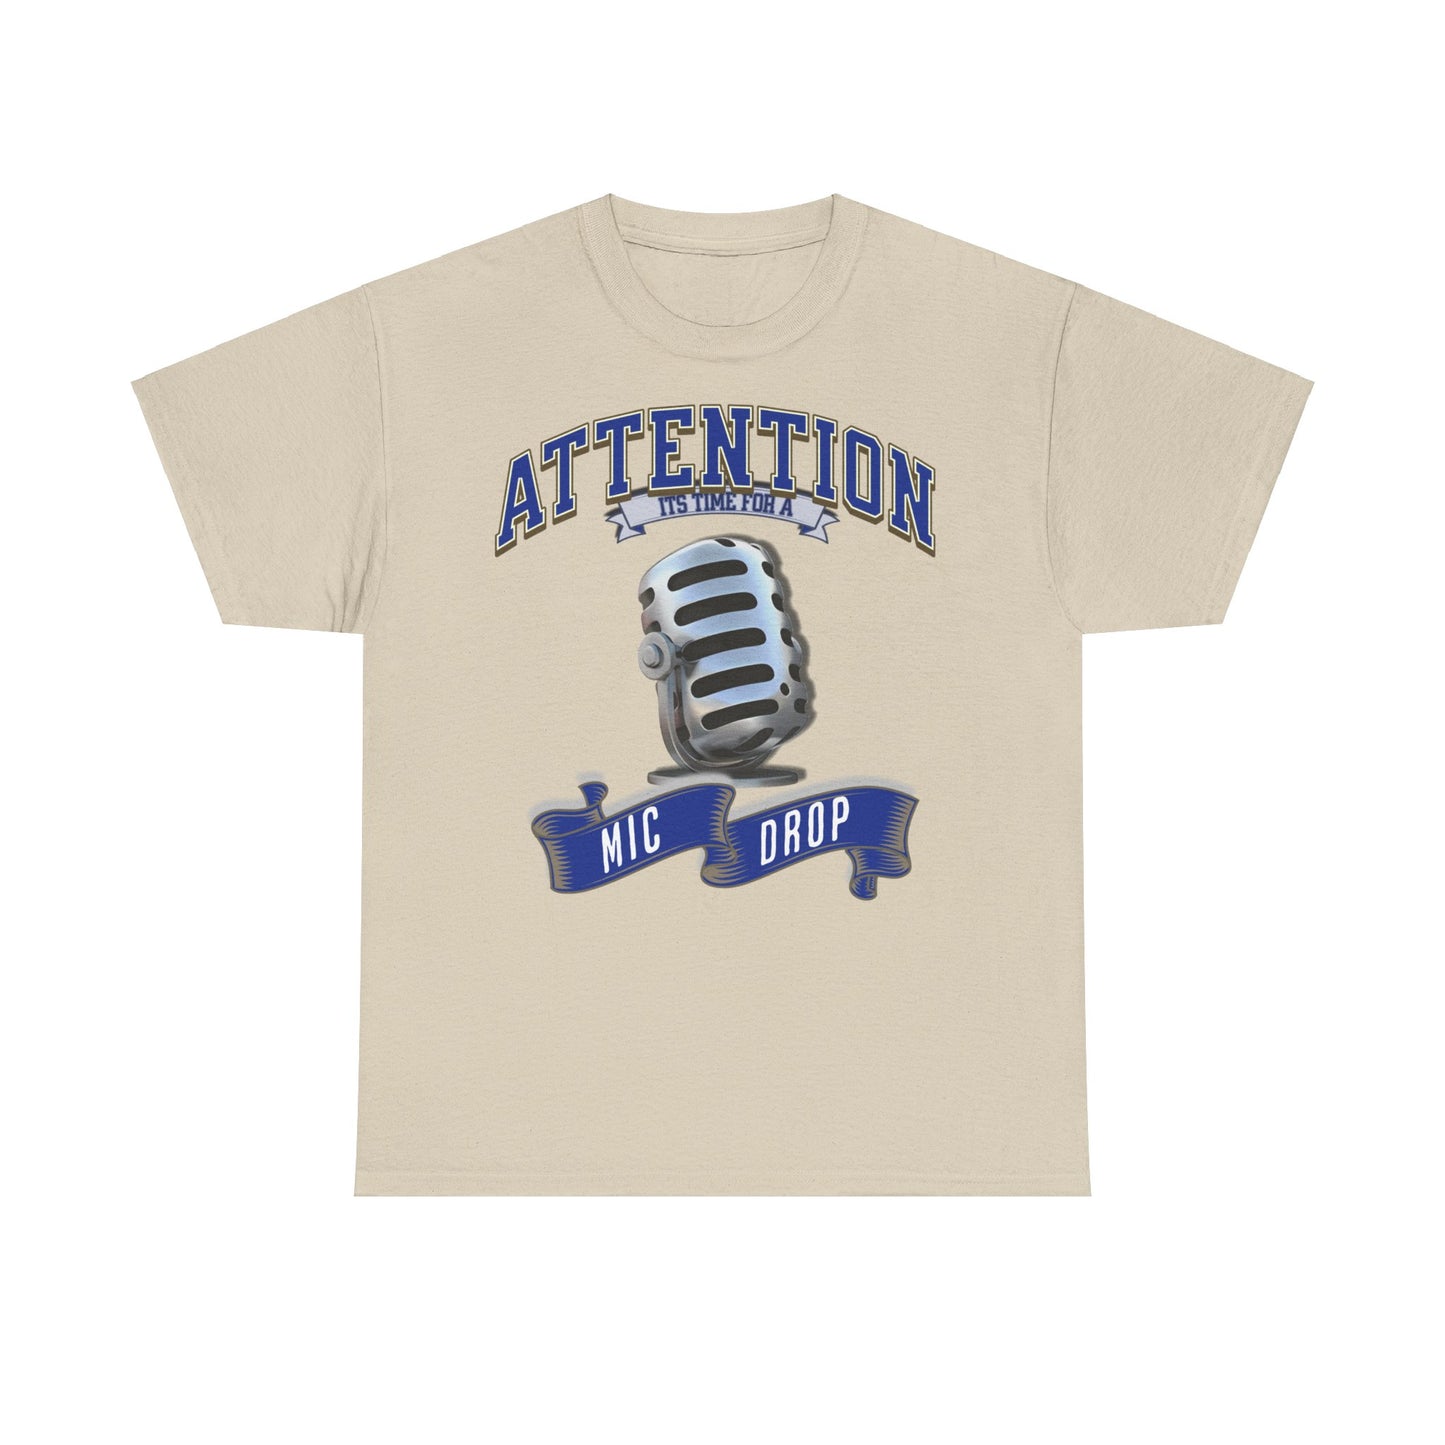 Mic Drop! Dieses coole T-Shirt mit der kultigen "It's Time for a Mic Drop" Aufschrift ist der perfekte Style für TikTok Stars und Influencer. Das hochwertige Baumwollshirt überzeugt mit seinem lässigen Urban Design und dem witzigen Slogan. Ob für Videos, Challenges oder einfach zum Chillen. It´s time for A Micdrop!